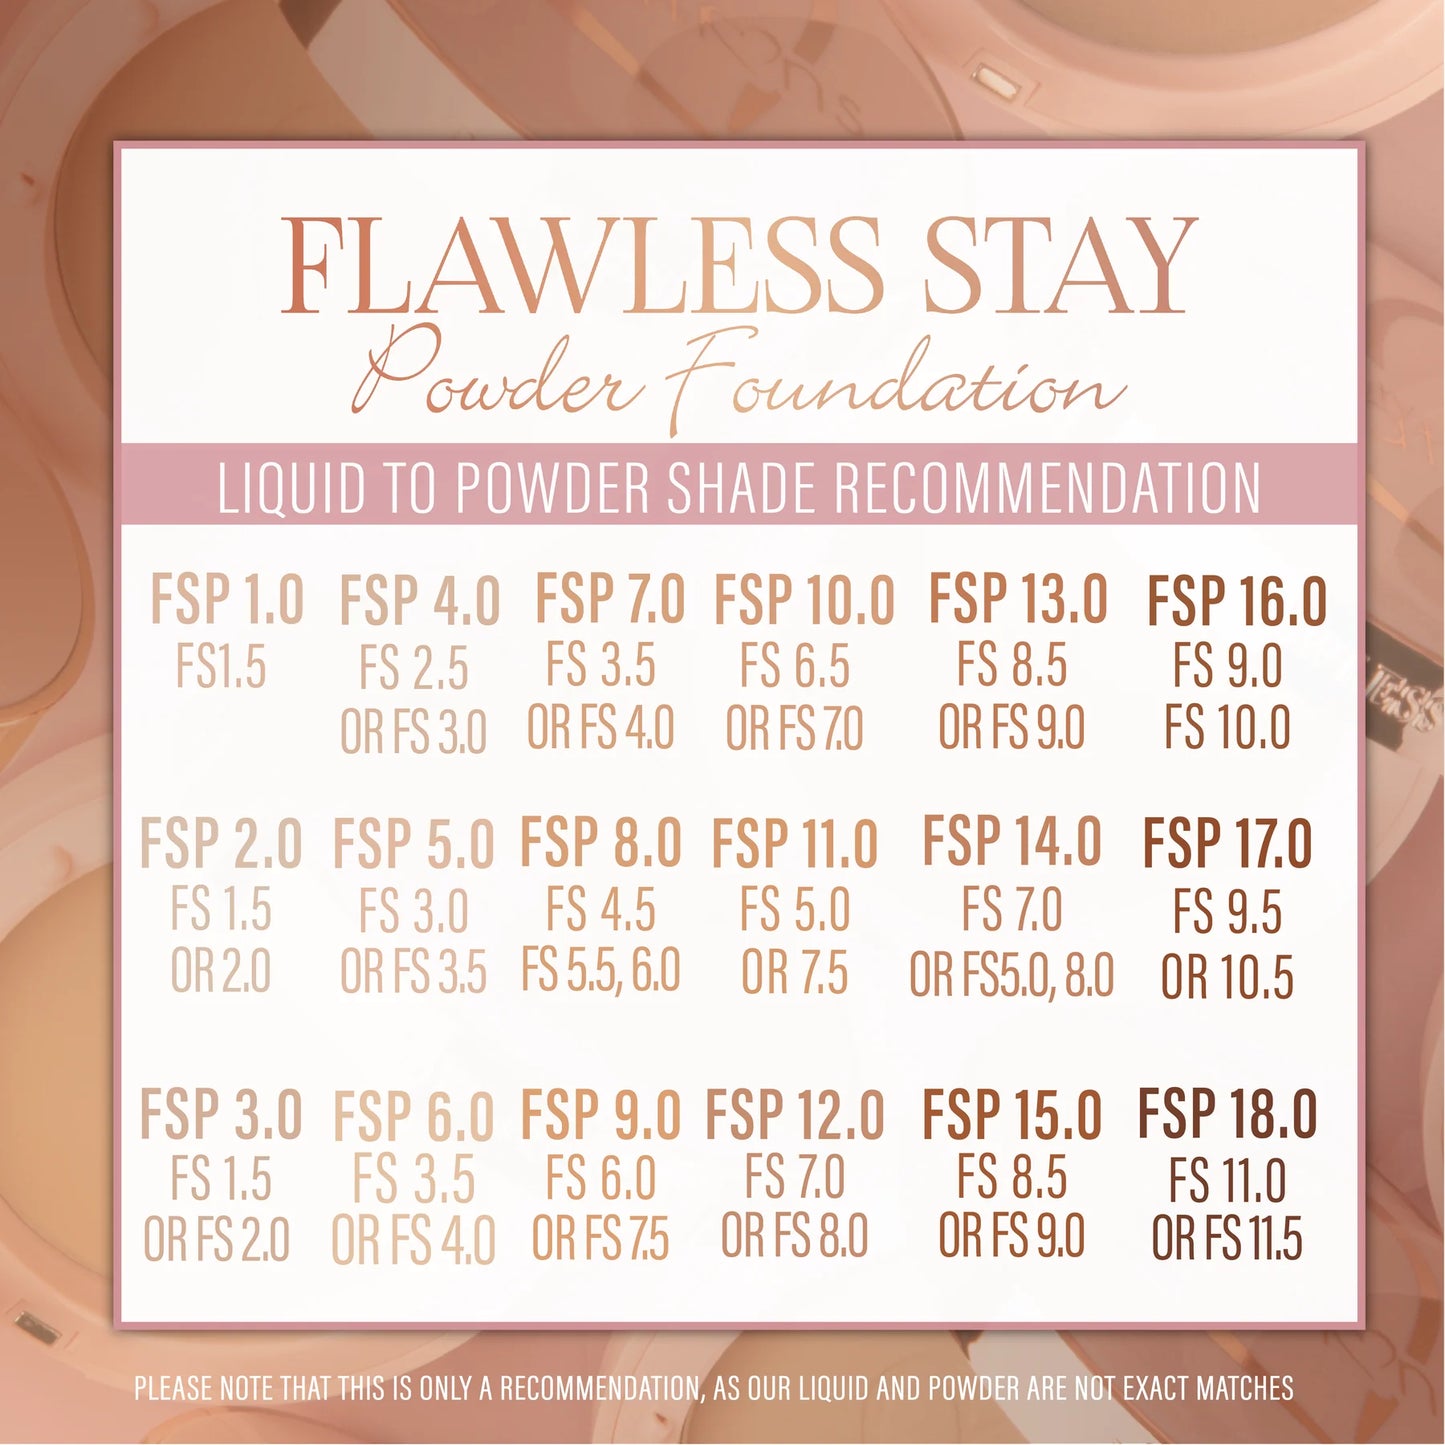 5.0 - Flawless Stay Powder Foundation